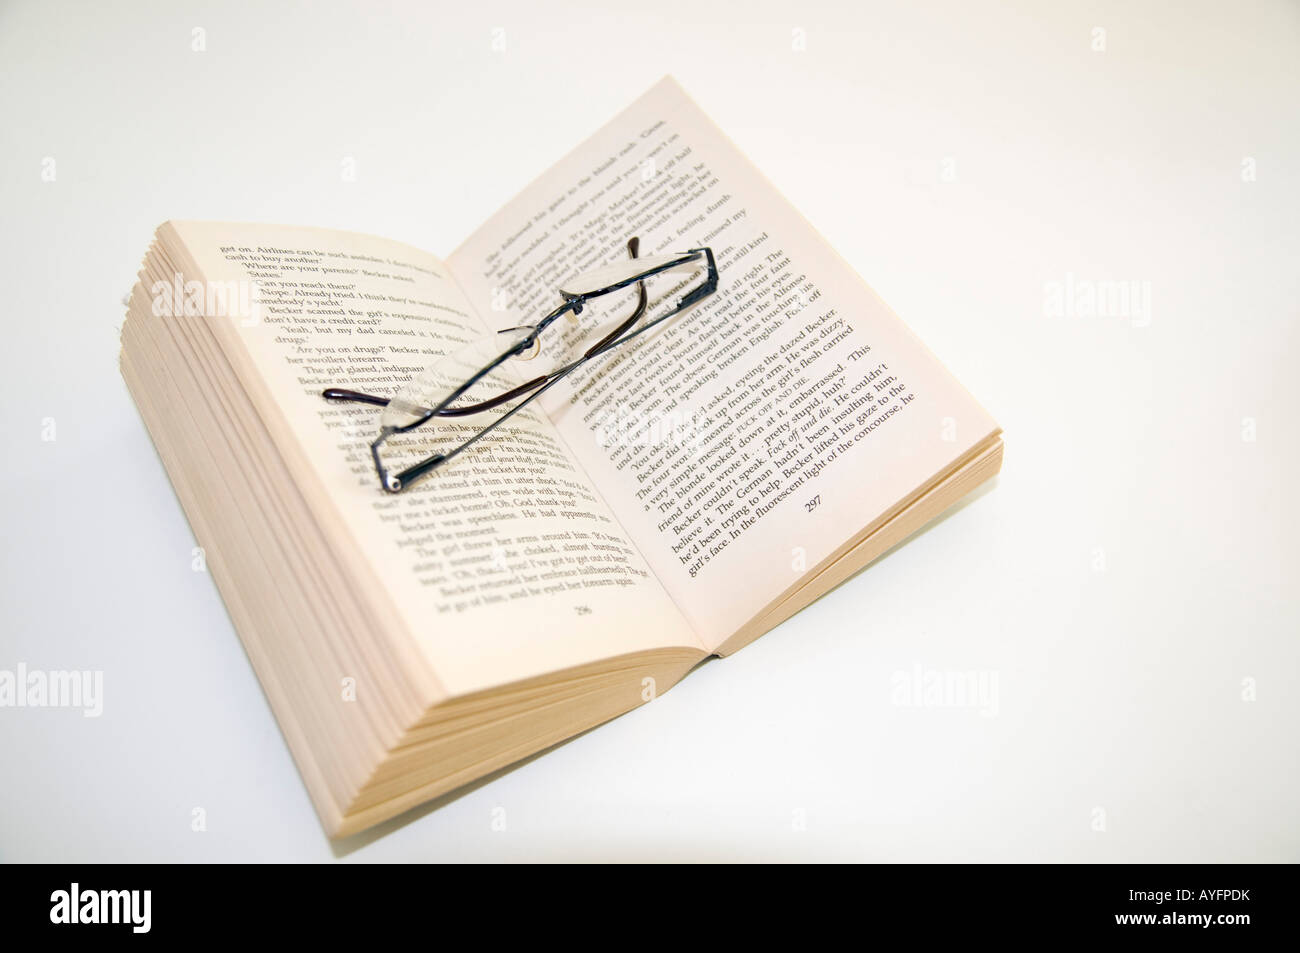 Aprire il libro in brossura e gli occhiali da lettura Foto Stock